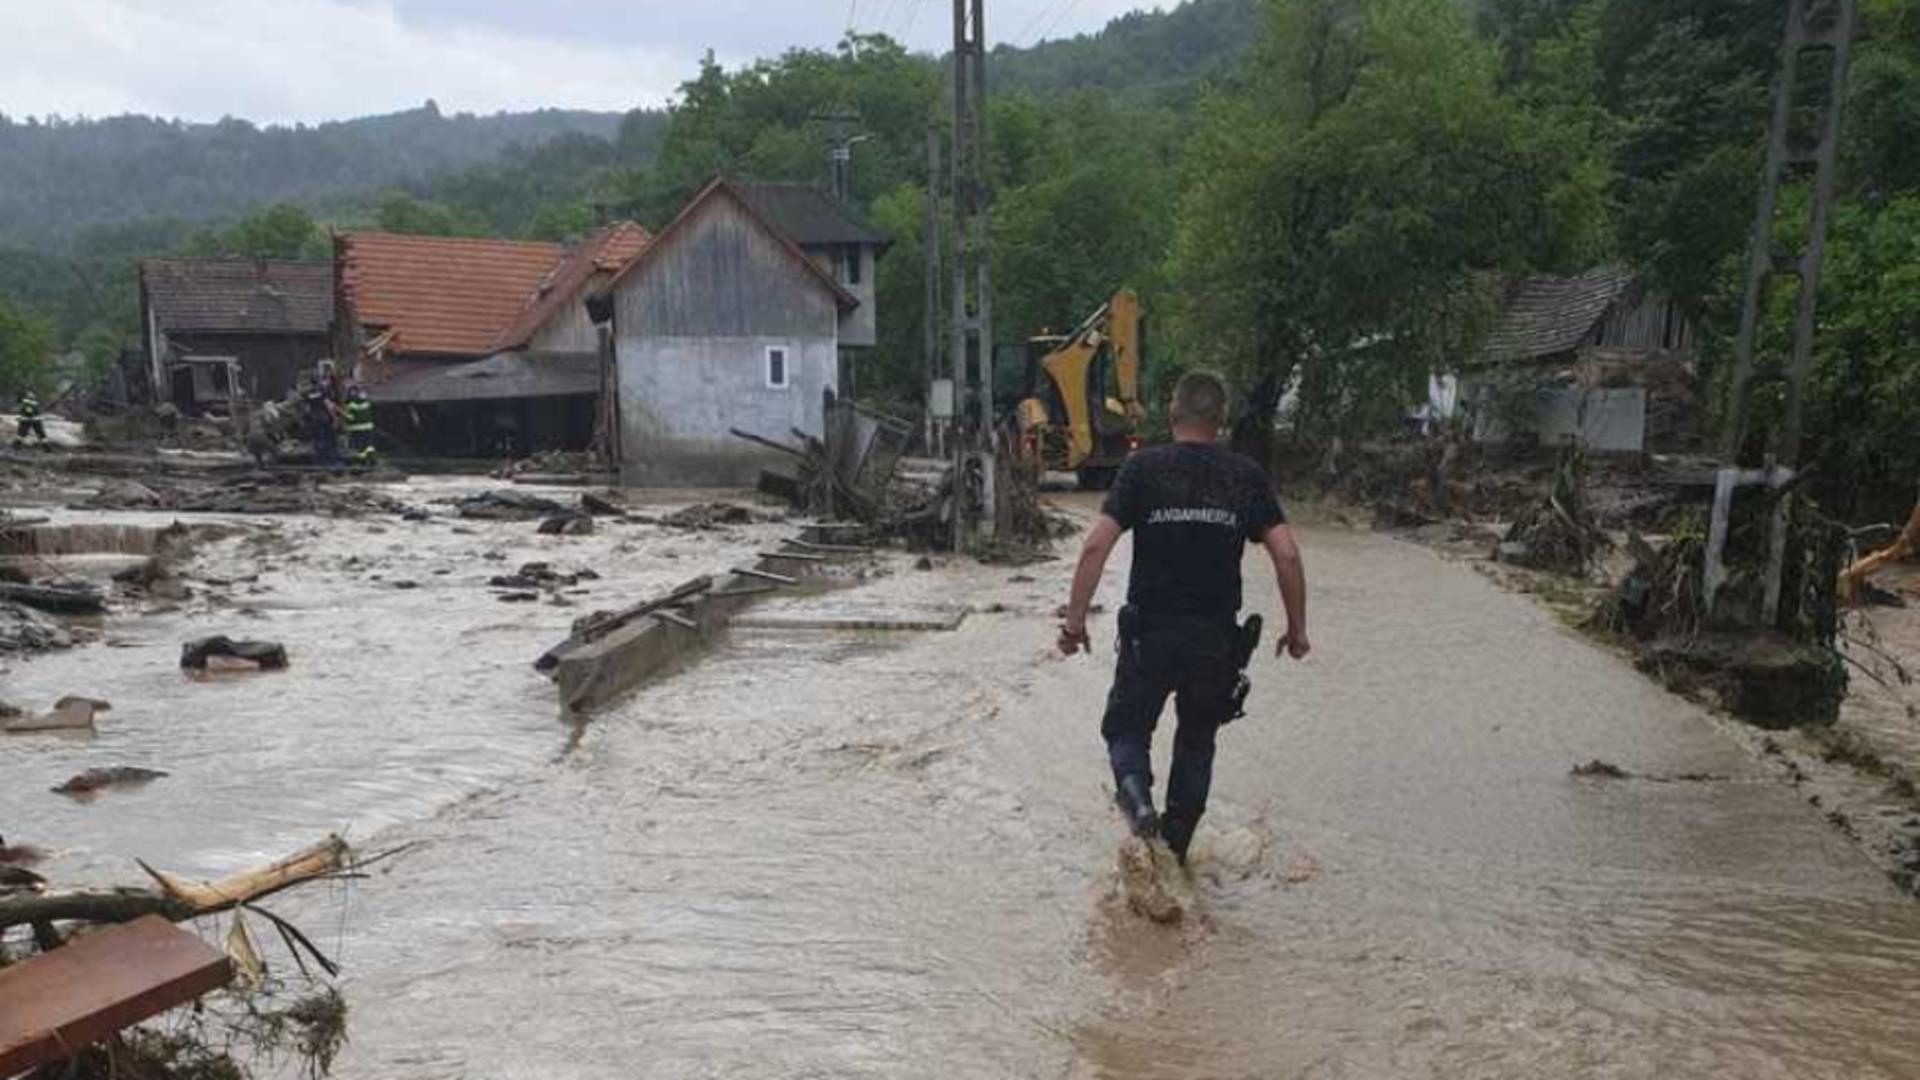 Bilanțul unui dezastru în Arad – Vremea a făcut prăpăd: O persoană a murit, cinci locuințe distruse total, 50 afectate grav de viituri